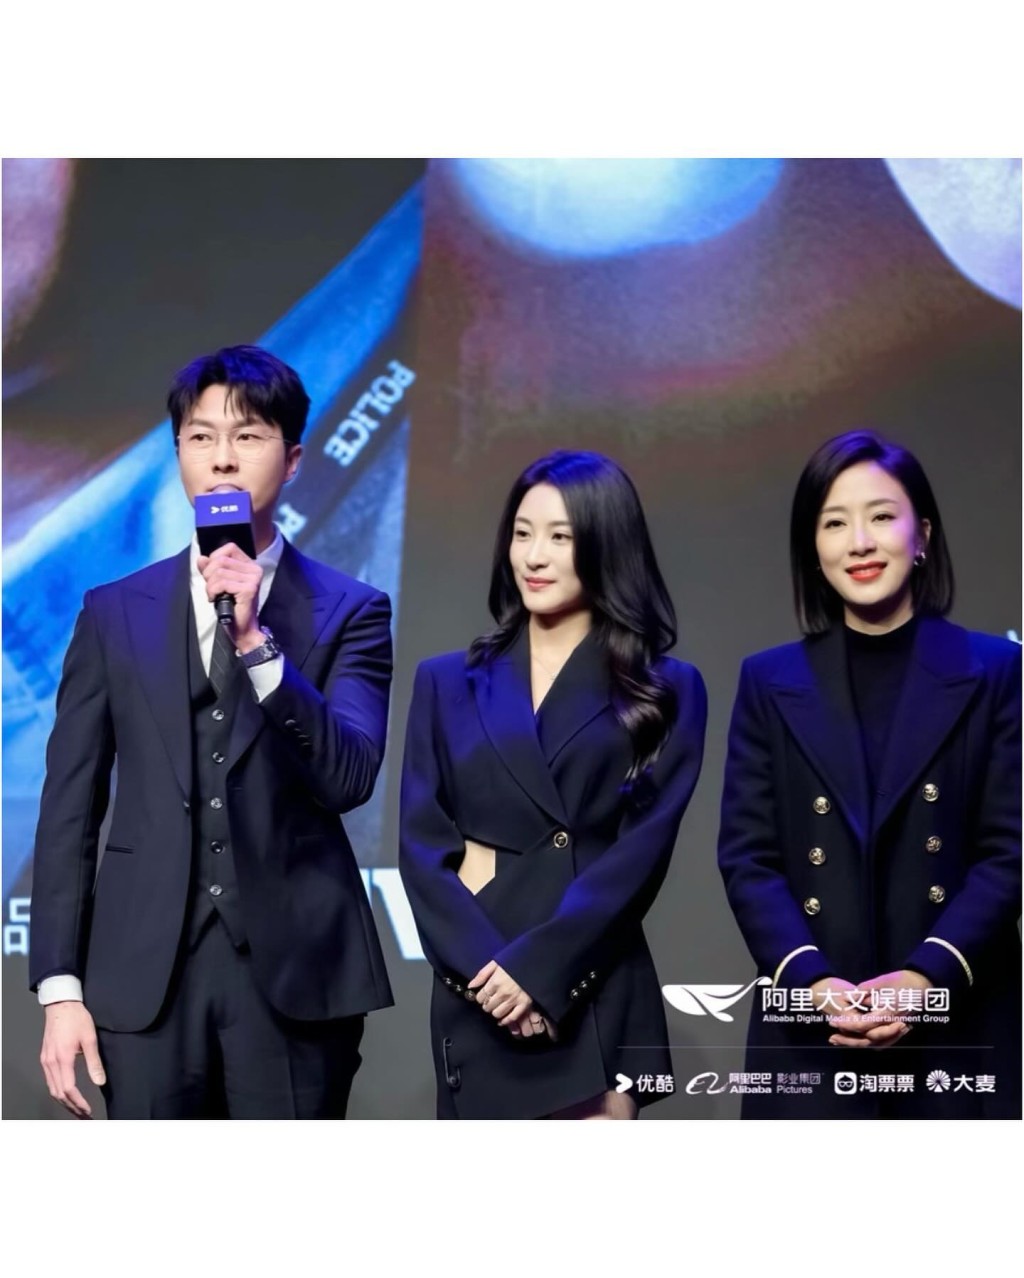 林夏薇與王浩信及楊茜堯現身宣傳《黑色月光》。